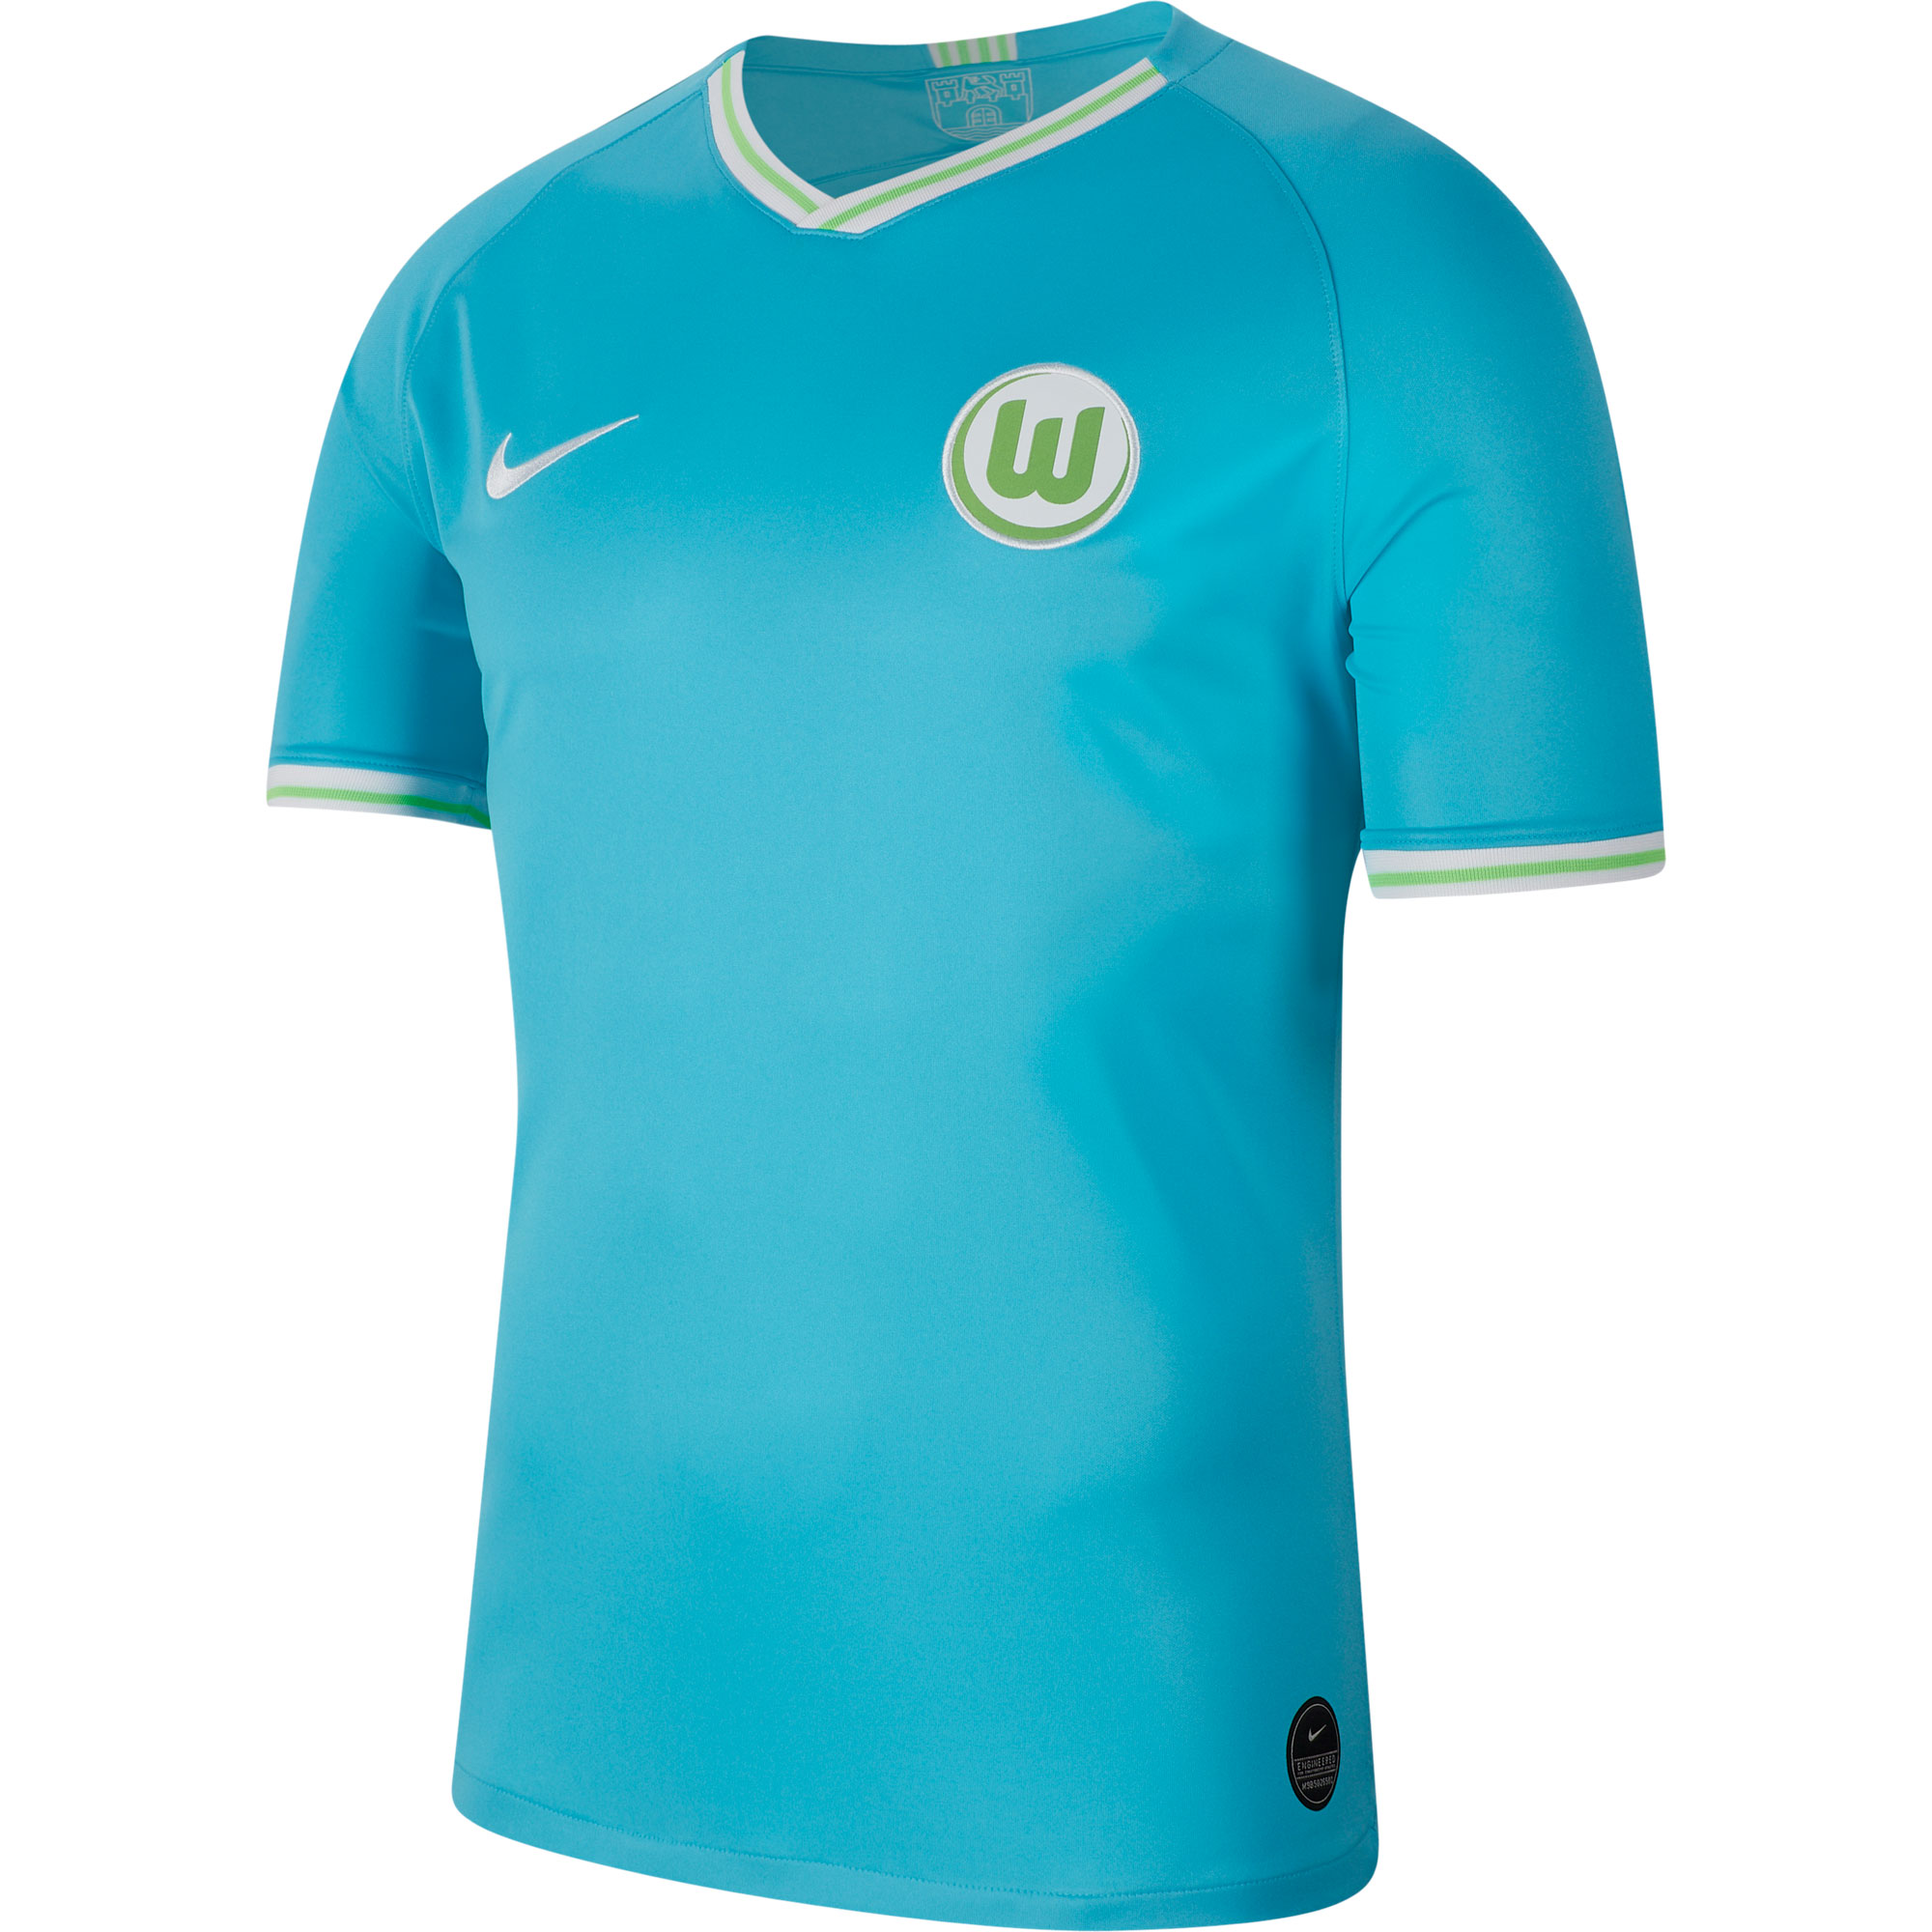 VfL Wolfsburg Away football shirt (unknown year). Sponsored by Volkswagen